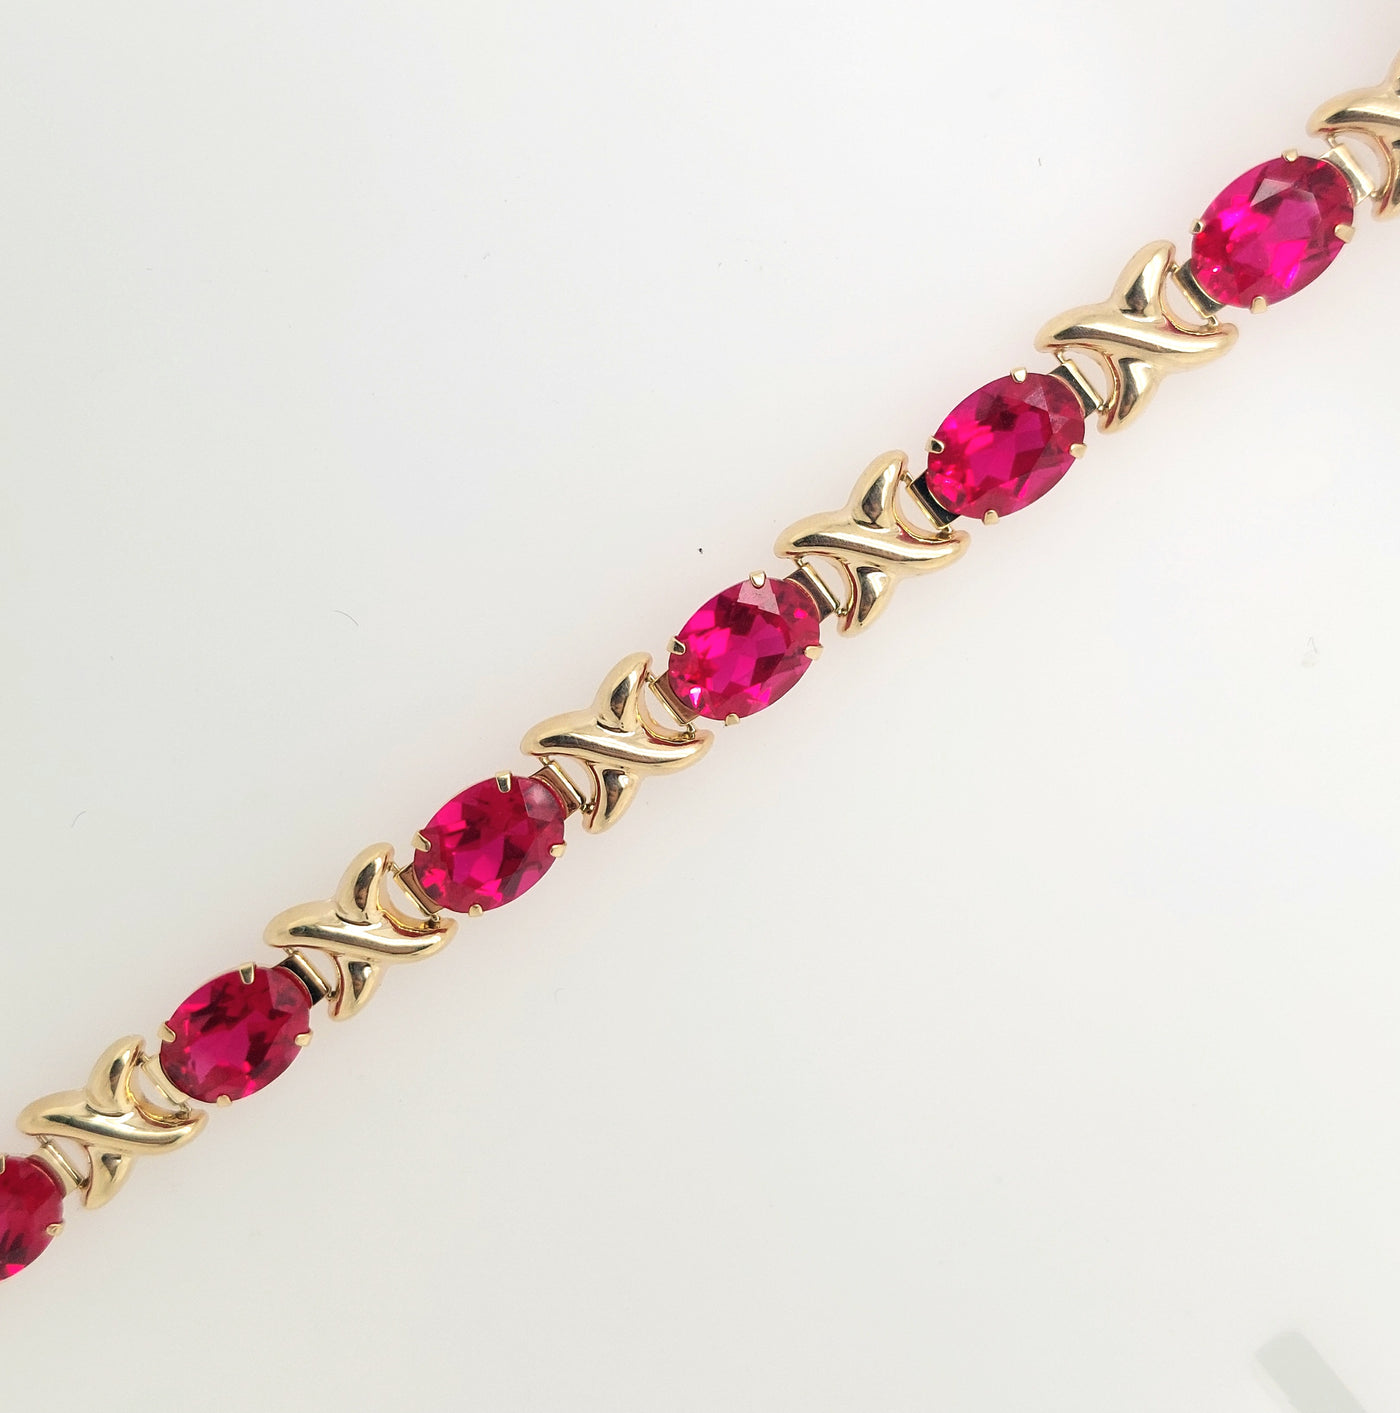 14KY Oval Lab-Grown Ruby Bracelet 7.25in